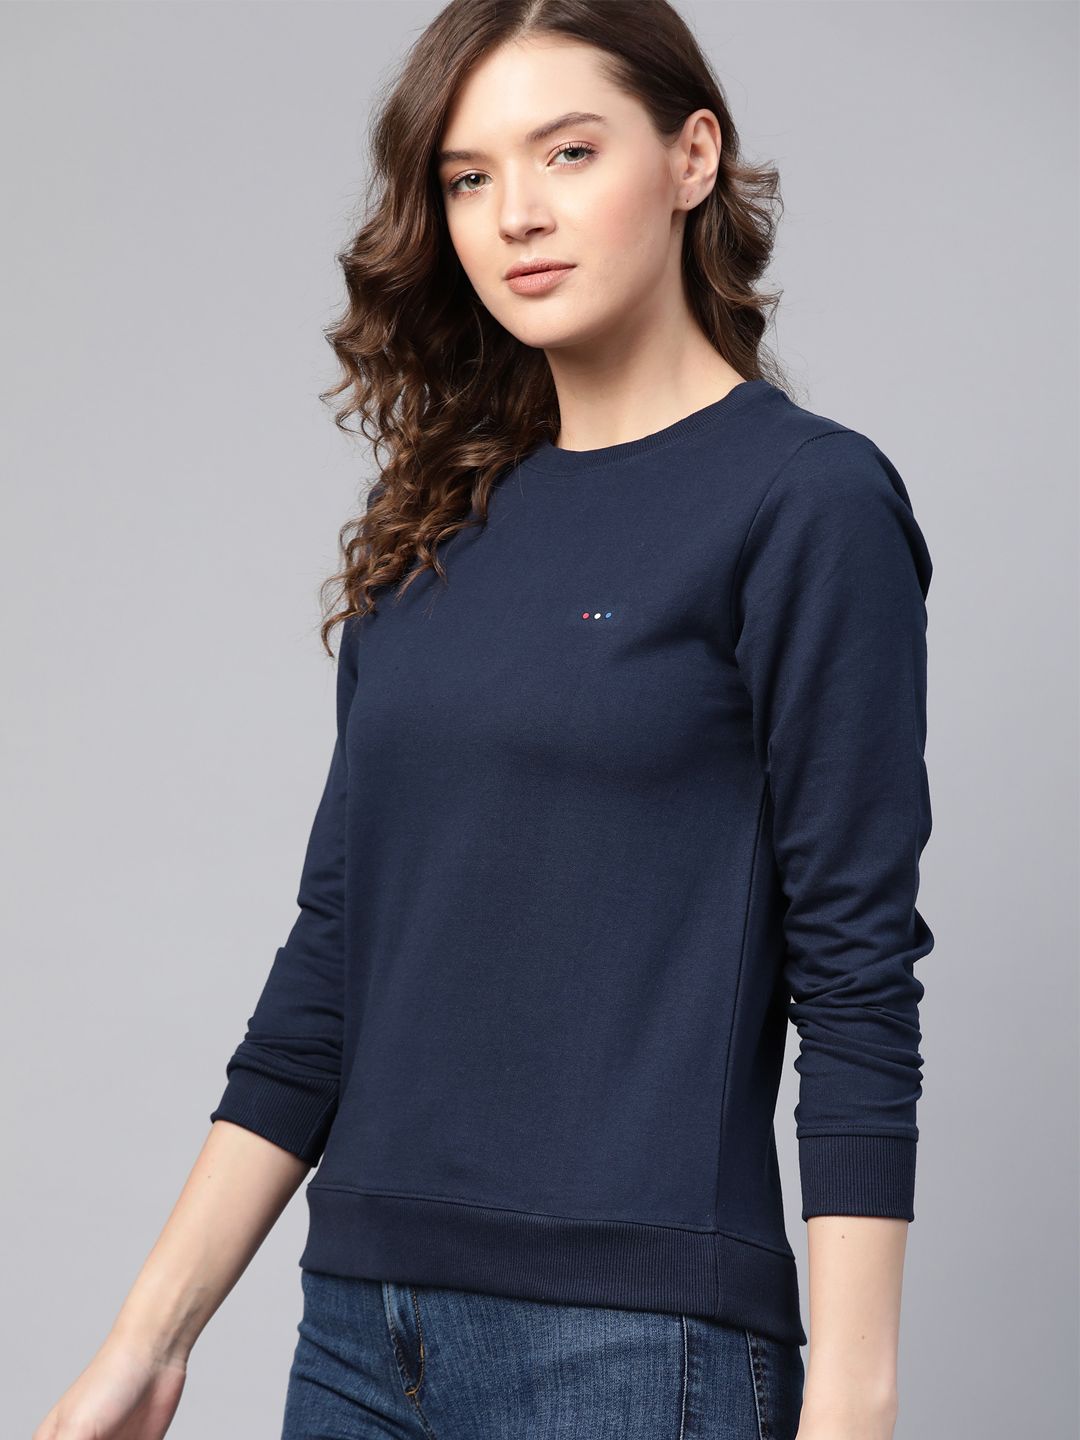 Harvard Women Navy Blue Solid Sweatshirt Price in India